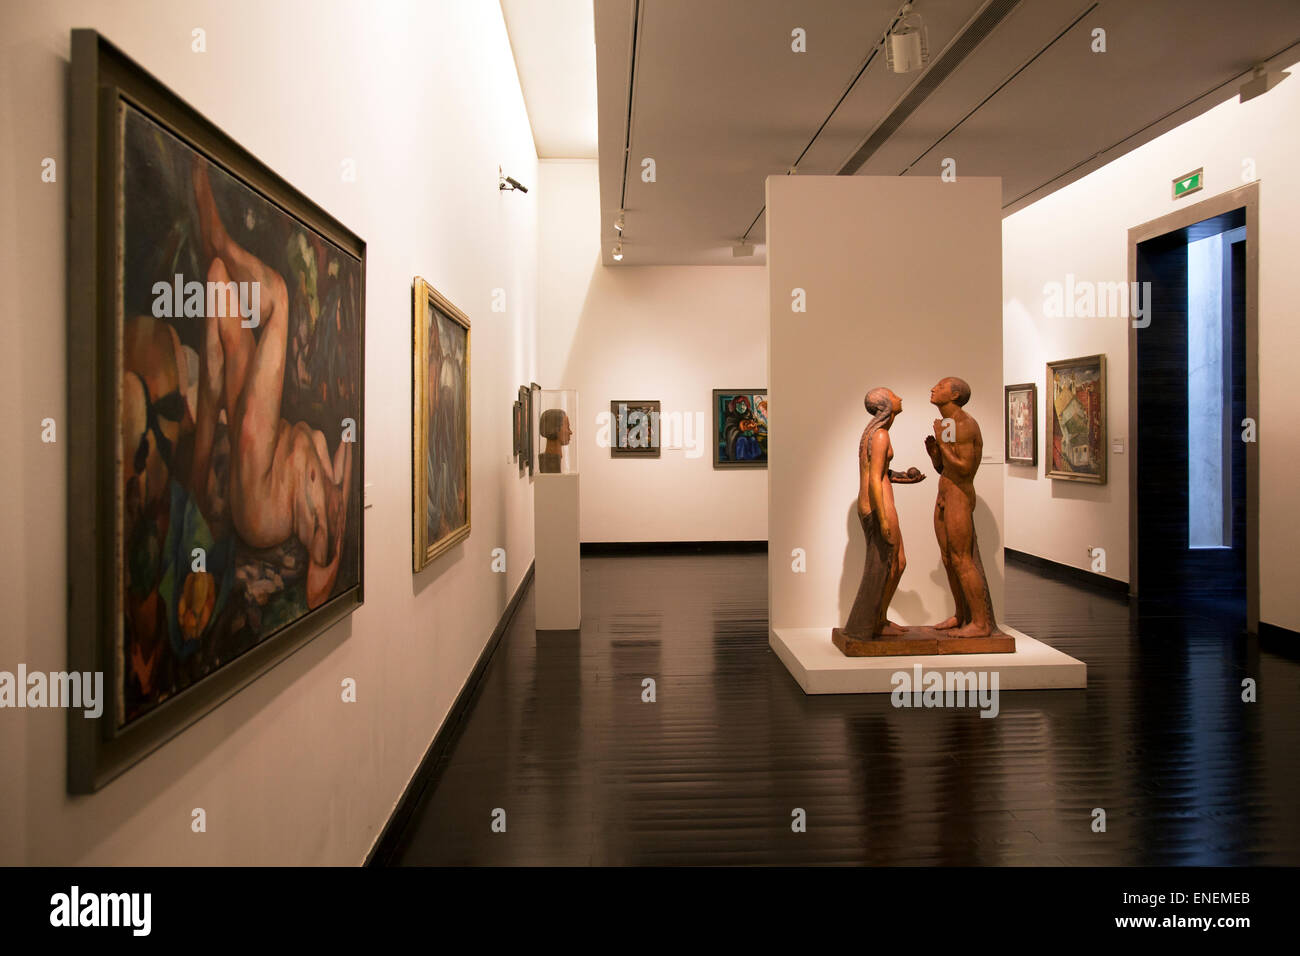 Museu Nacional de Arte Contemporânea Chiado, Chiado Museum in Lissabon - portugal Stockfoto